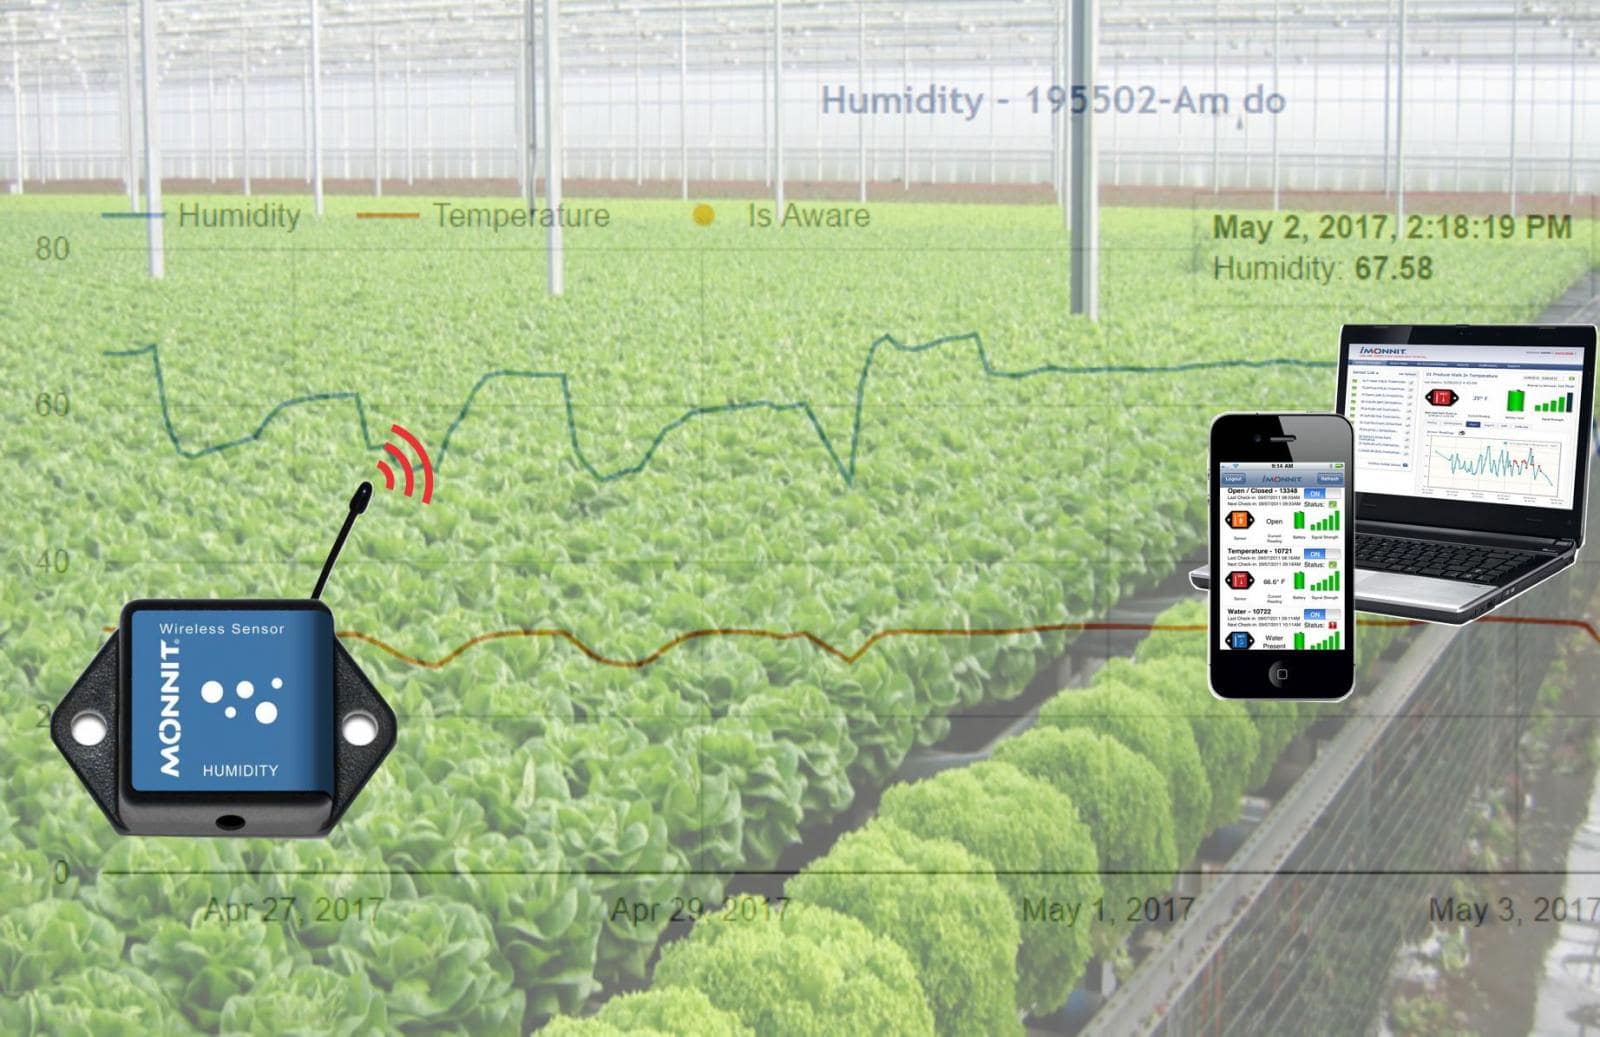 Áp dụng công nghệ IoT vào Hệ thống quản lí nhà kính trong nông nghiệp